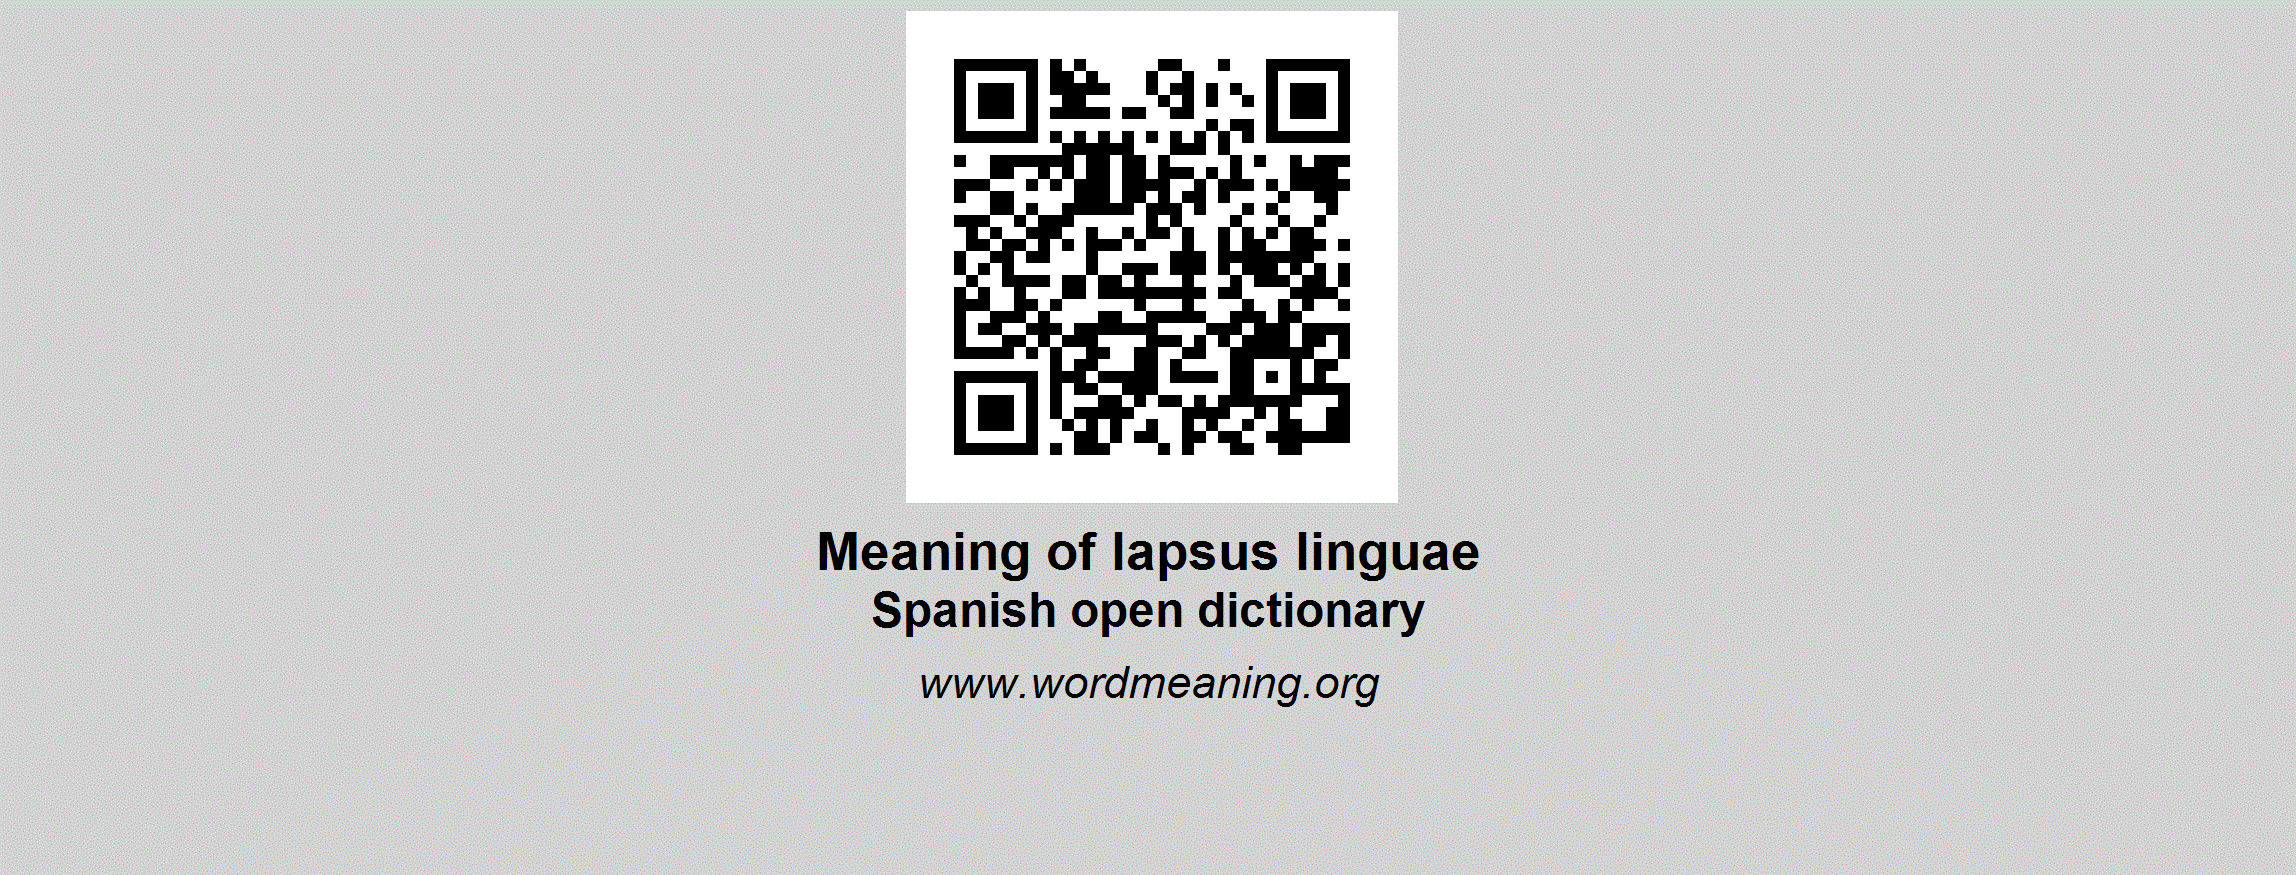 lapsus linguae definition